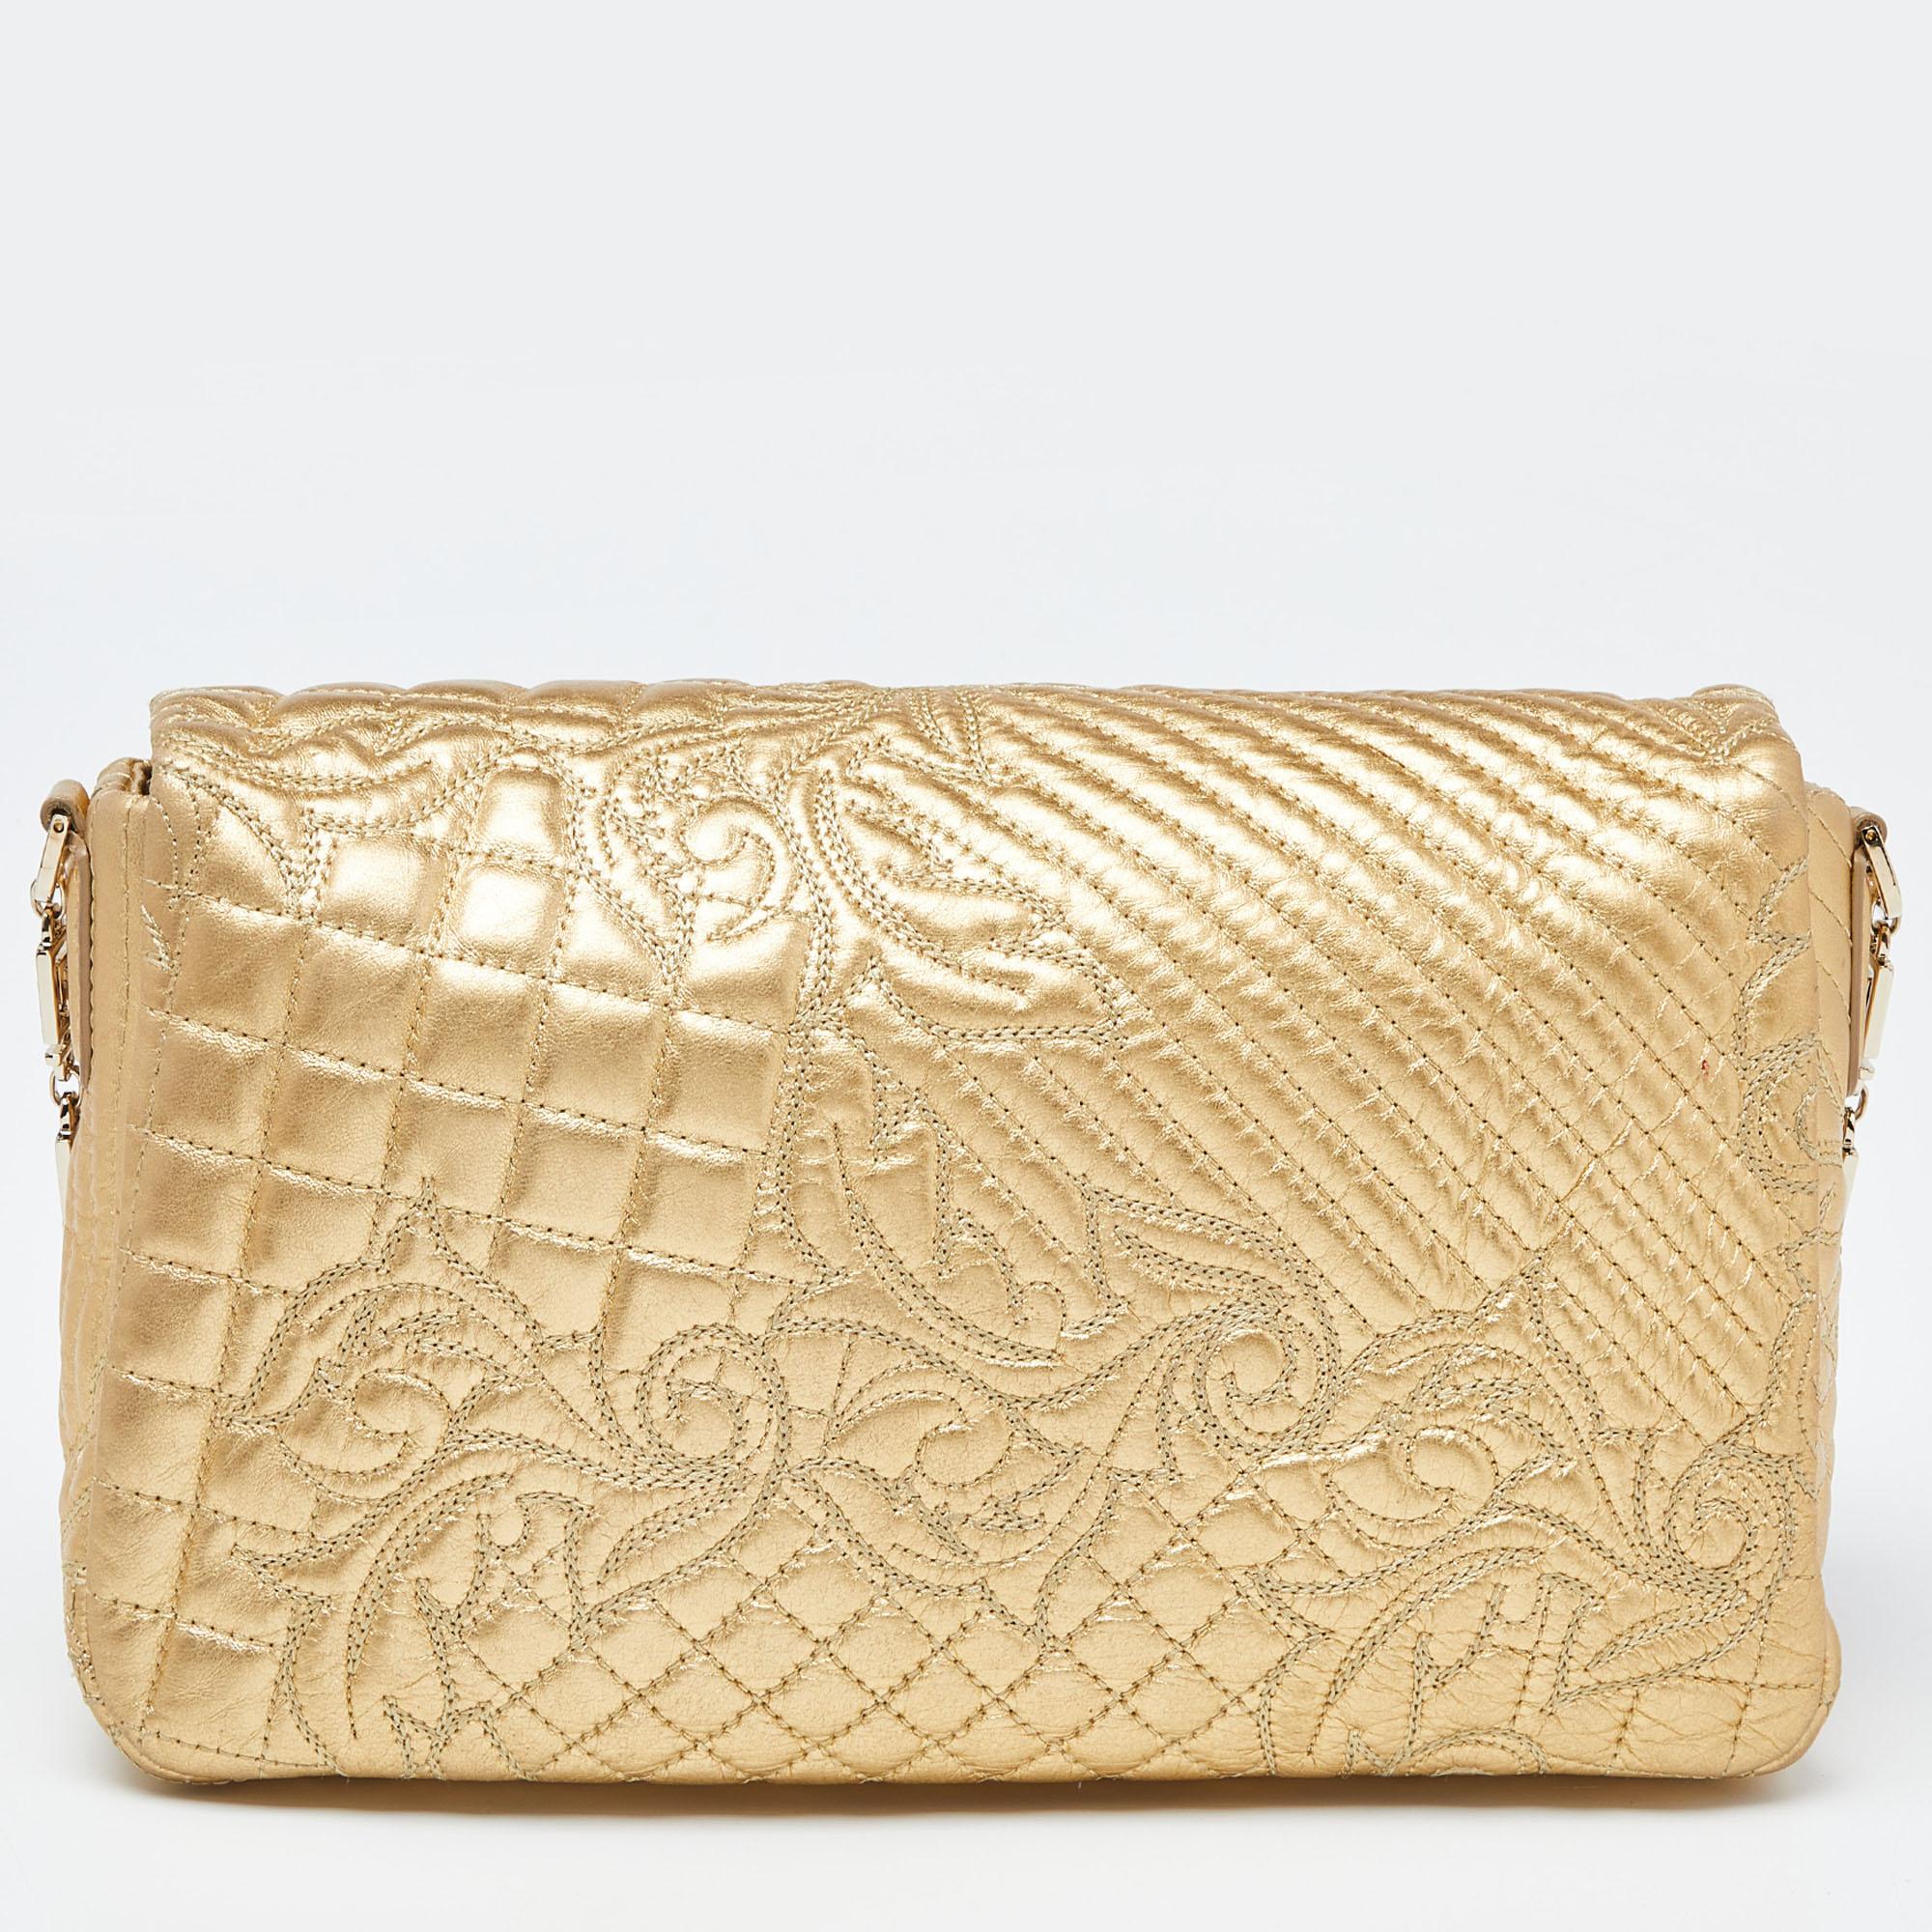 Comme ce sac de Versace est magnifique ! Confectionné en cuir doré et avec des accessoires en métal doré, il présente un design exceptionnel. Il possède un intérieur en satin sécurisé par des fermetures à glissière et il est retenu par une chaîne.